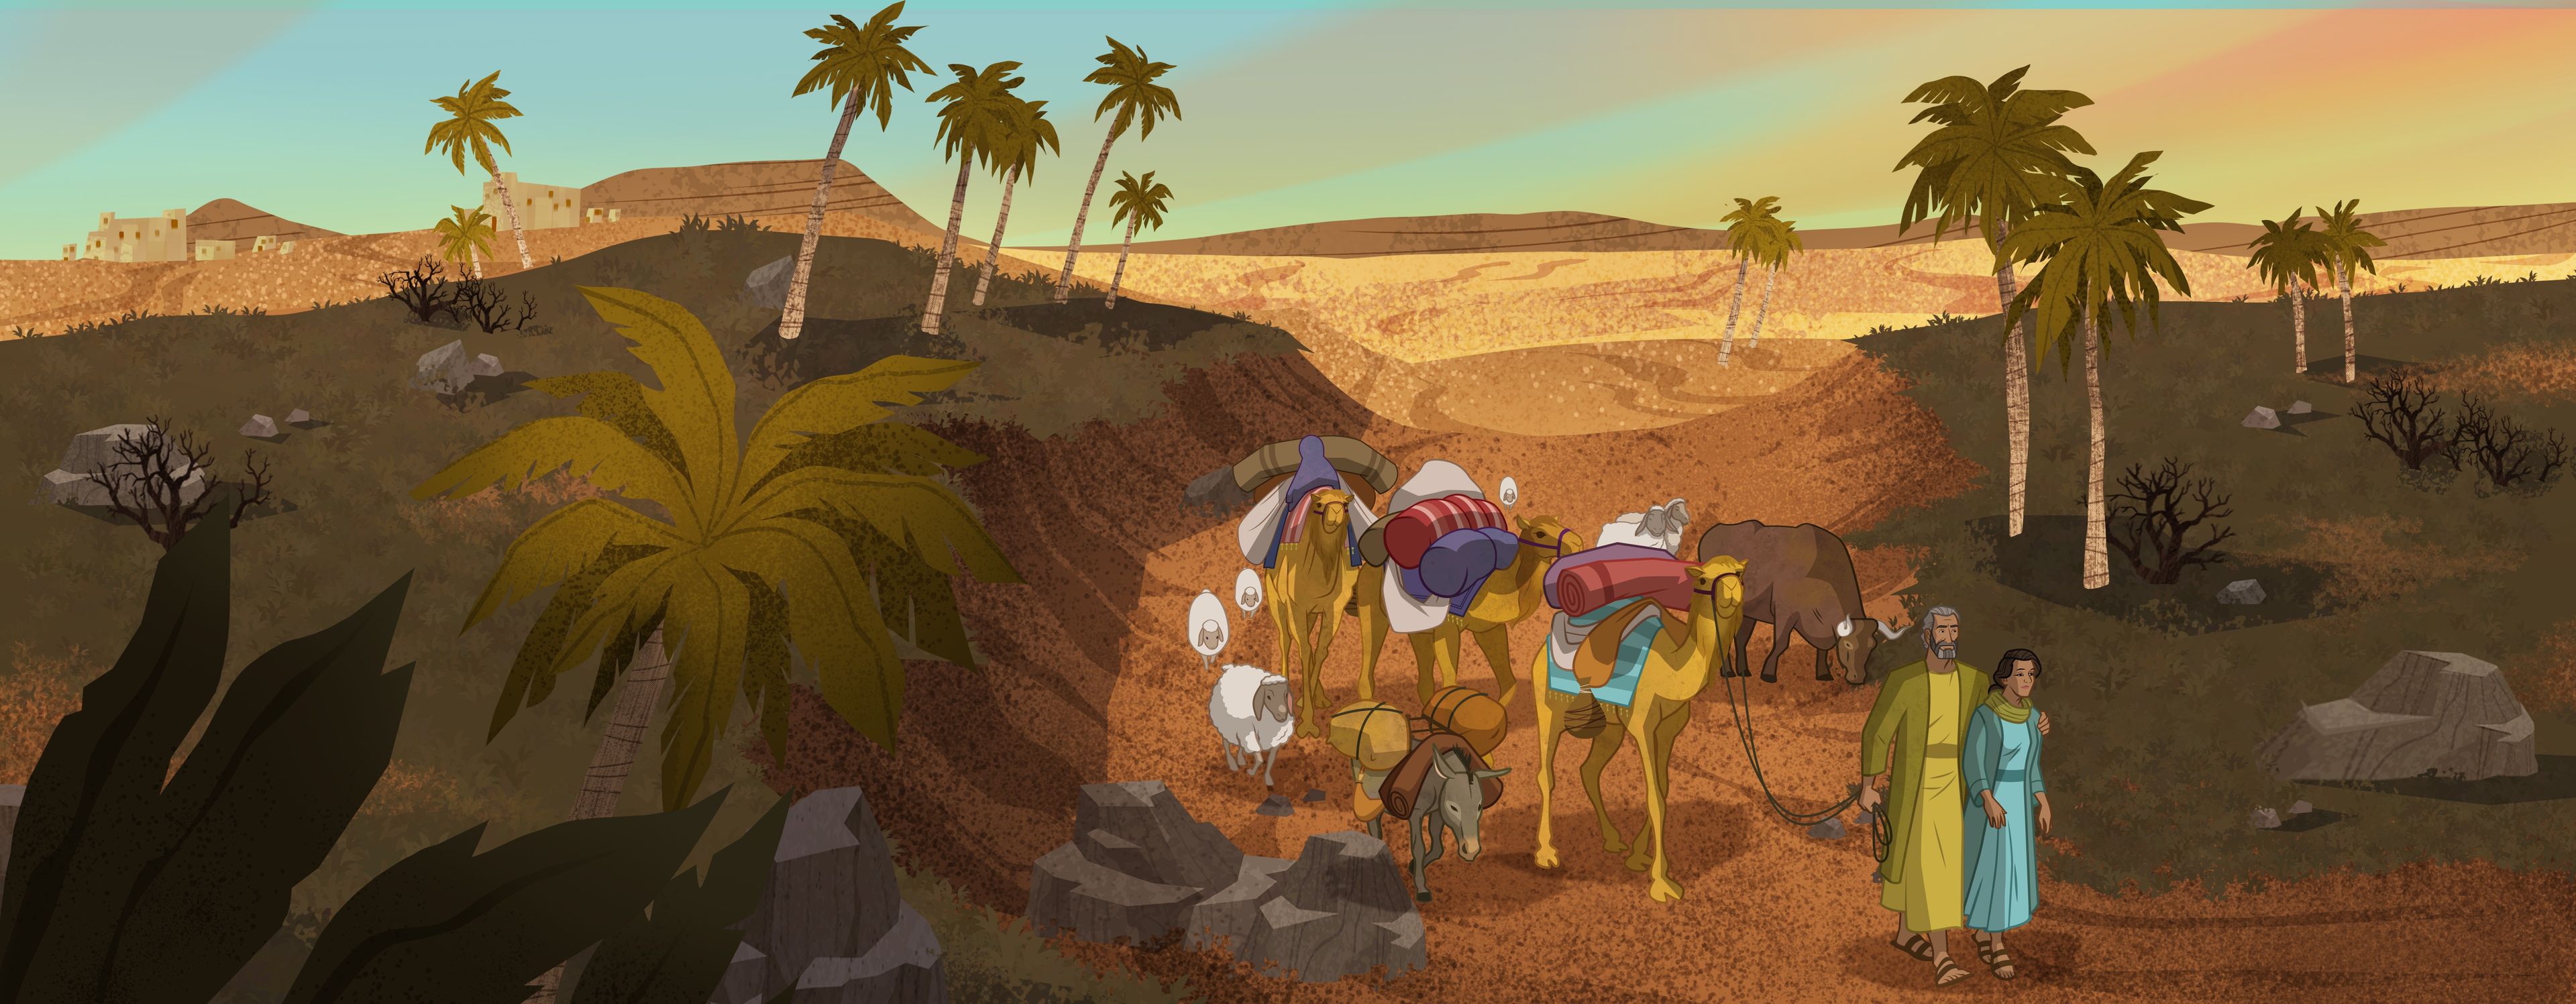 Illustration von Abraham und Sara, die mit Kamelen unterwegs sind 
Genesis 12:10-20; Abraham 2:21-25